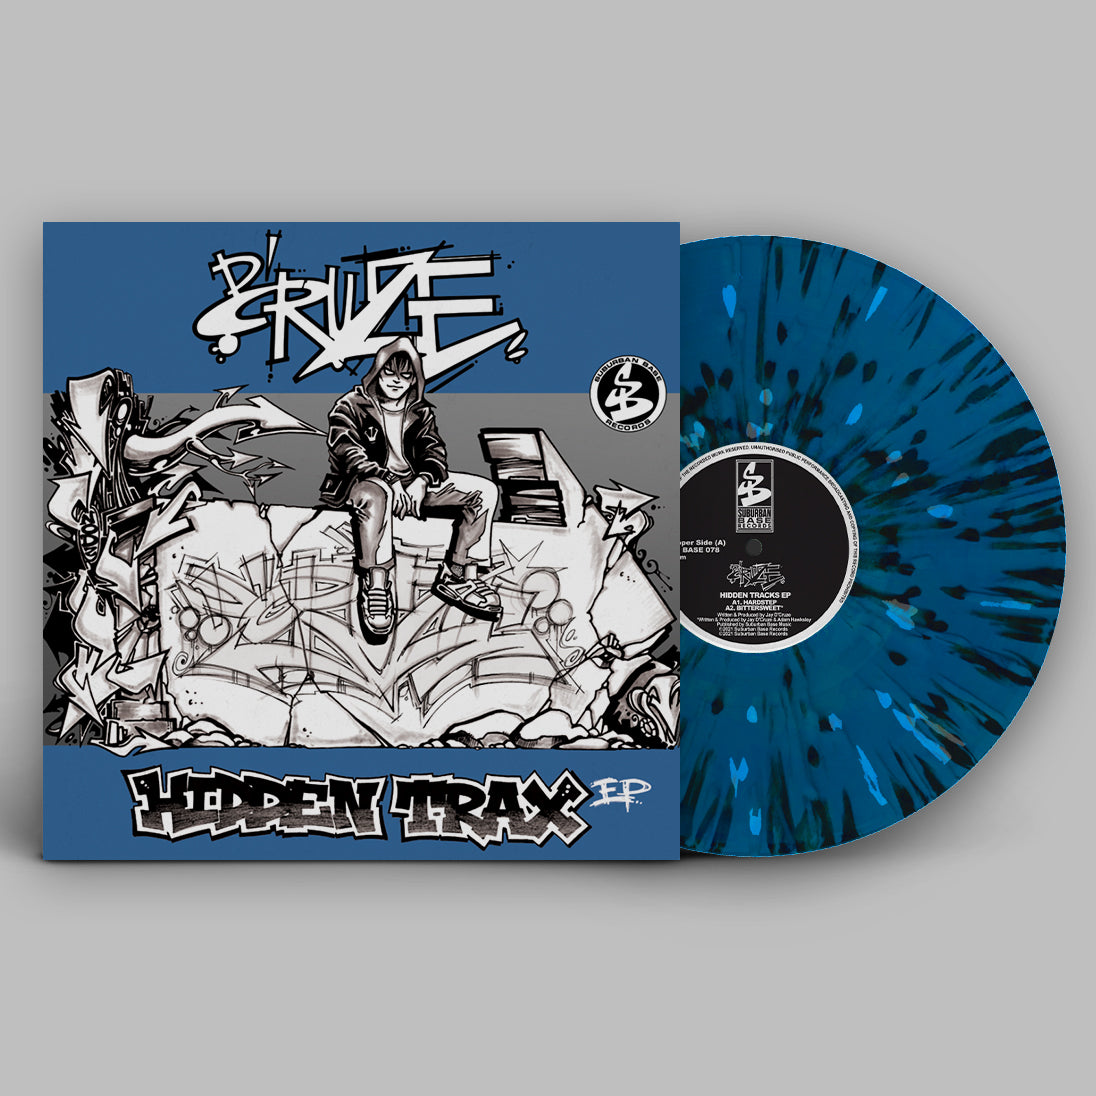 D'CRUZE 'HIDDEN TRAX EP' 12" (BLUE WAX)